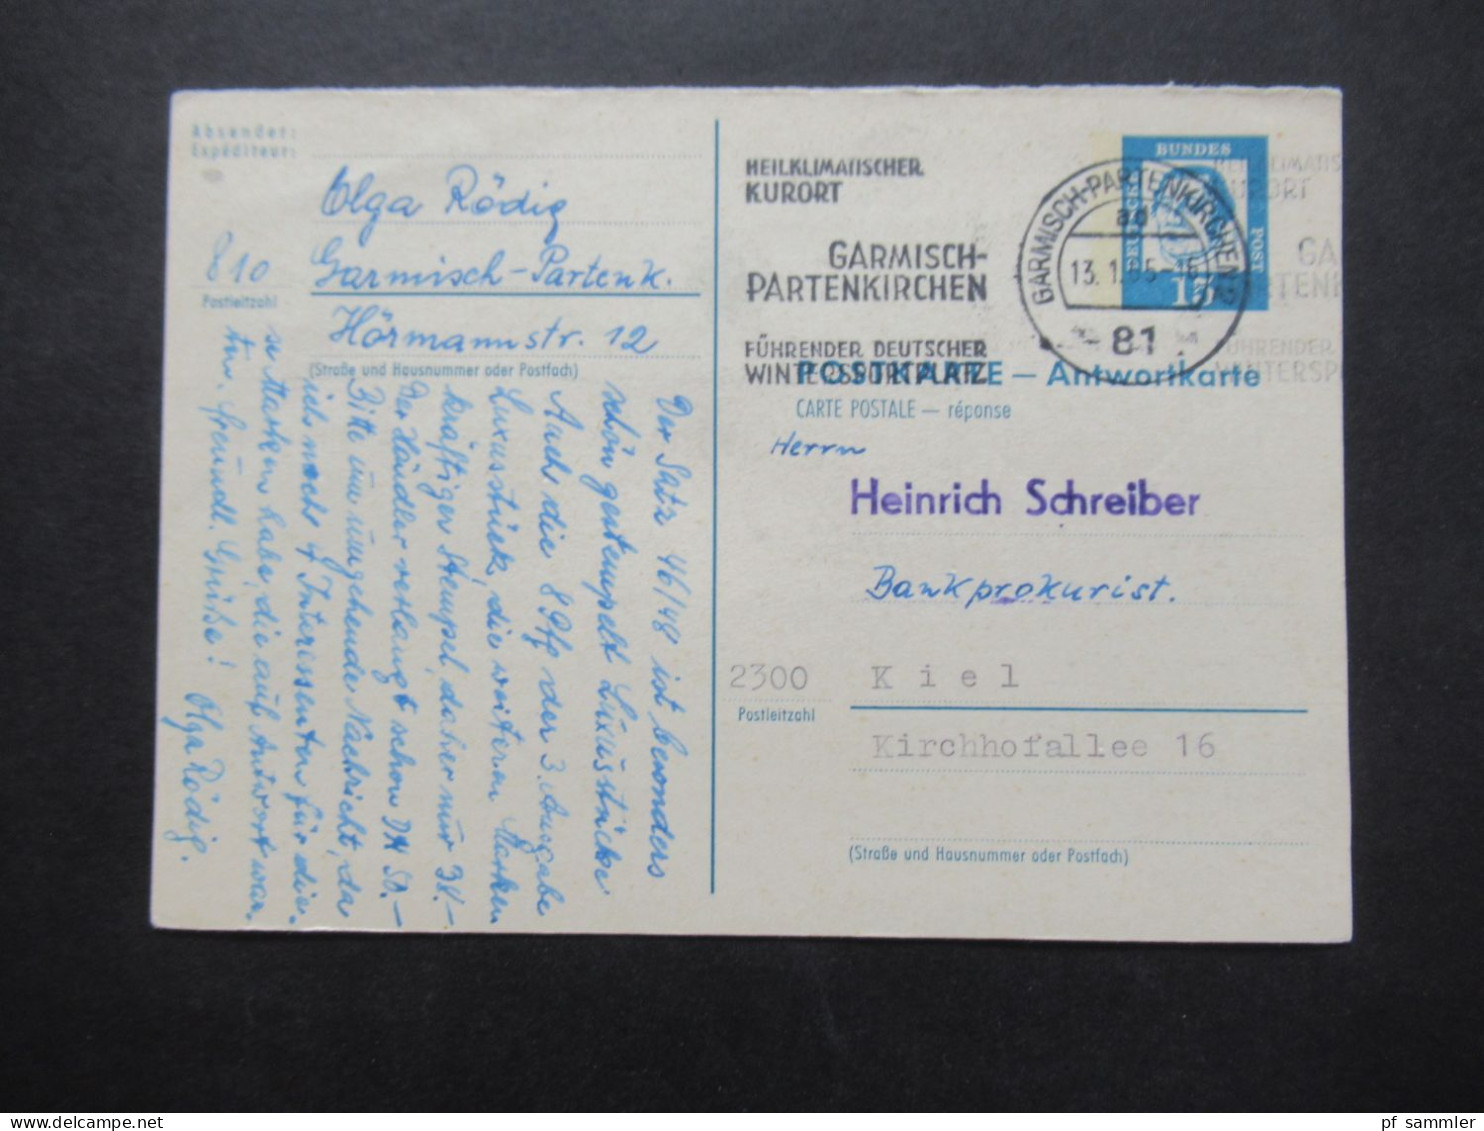 BRD 1965 Bedeutende Deutsche Ganzsache Antwortkarte P 80 A Werbestempel Garmisch Partenkirchen Kurort - Postkarten - Gebraucht